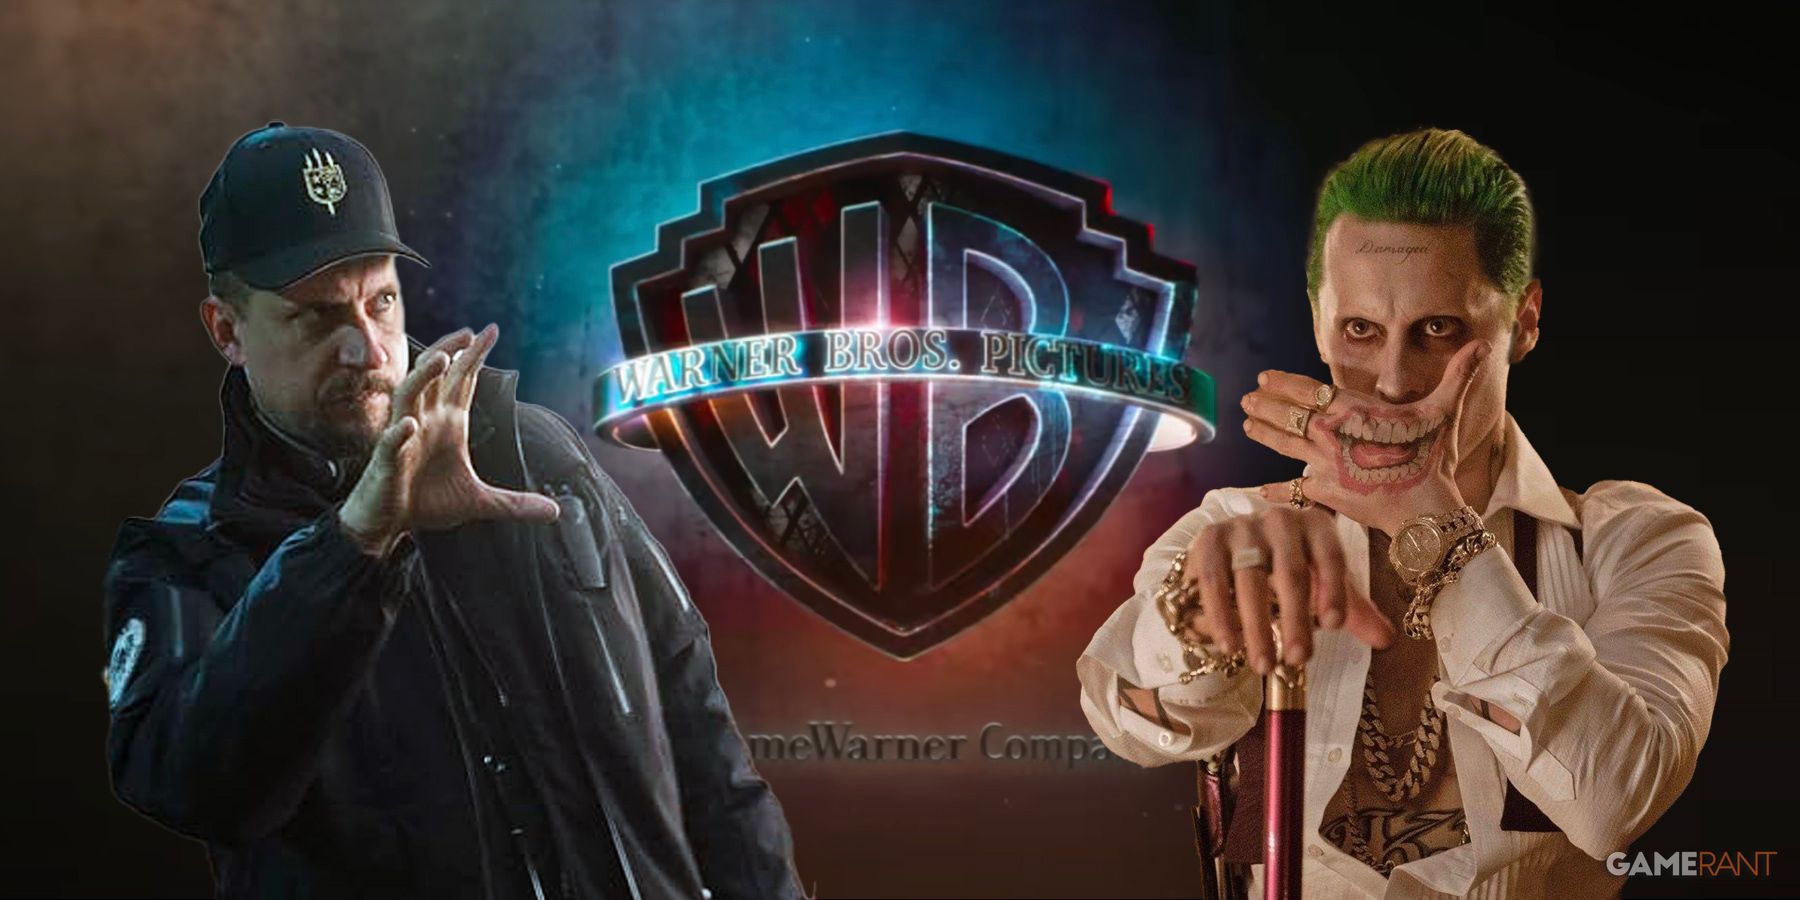 Suicide Squad' Director Regrets Jared Leto's Joker “Damaged